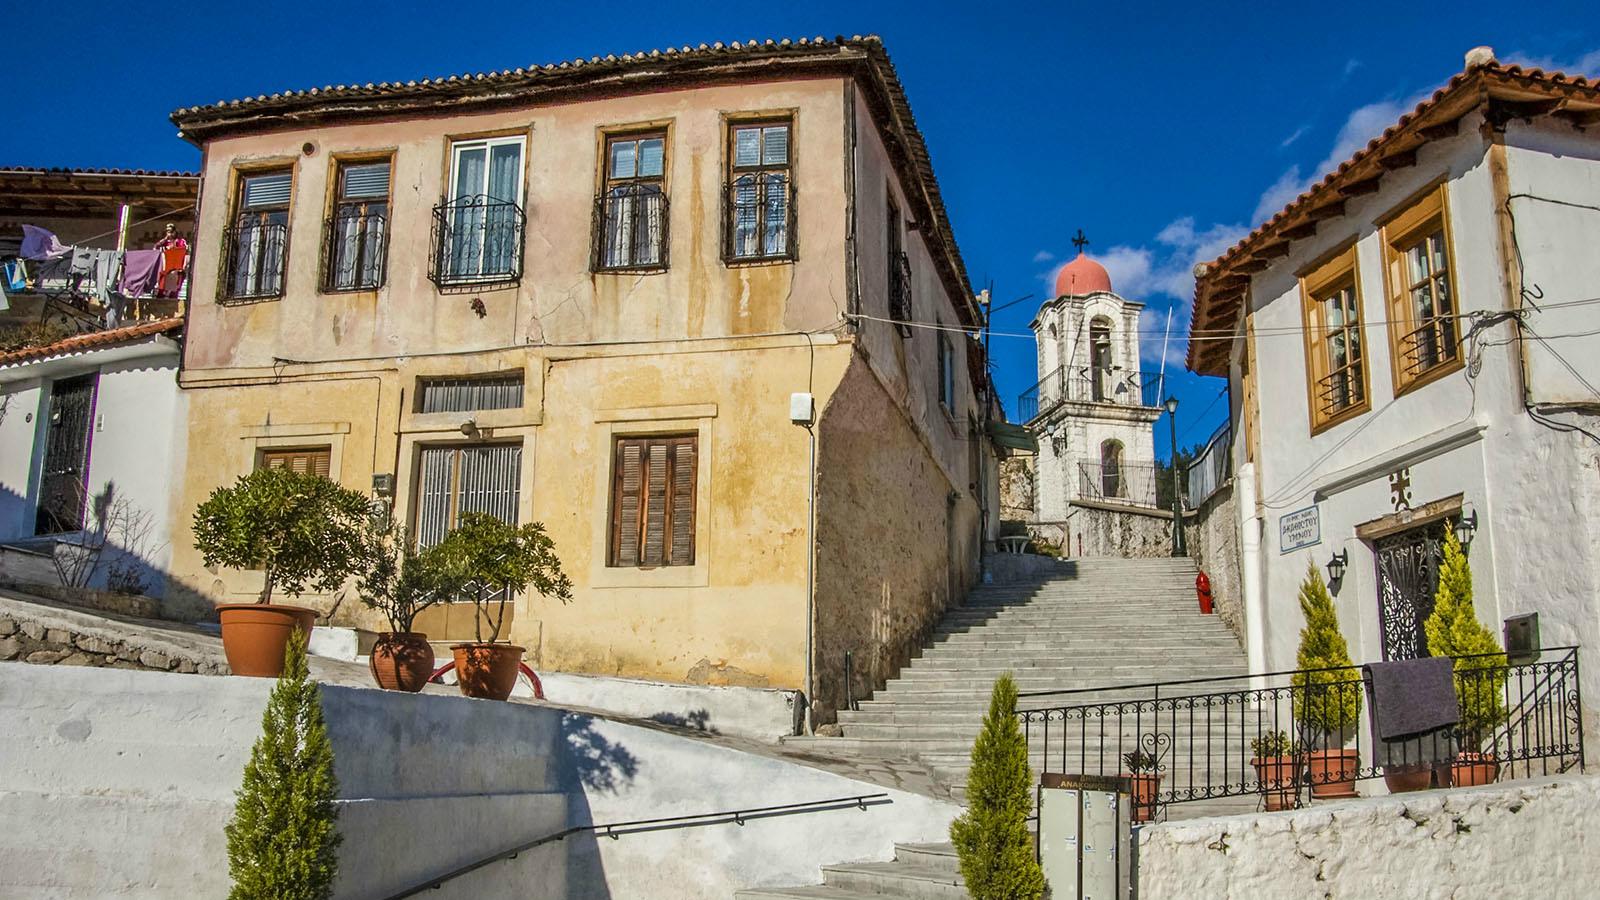 Το ΤΕΕ Θράκης αναλαμβάνει πρωτοβουλίες για την νομοθετική ρύθμιση ενός σοβαρού θέματος που αφορά την Παλιά Πόλη της Ξάνθης